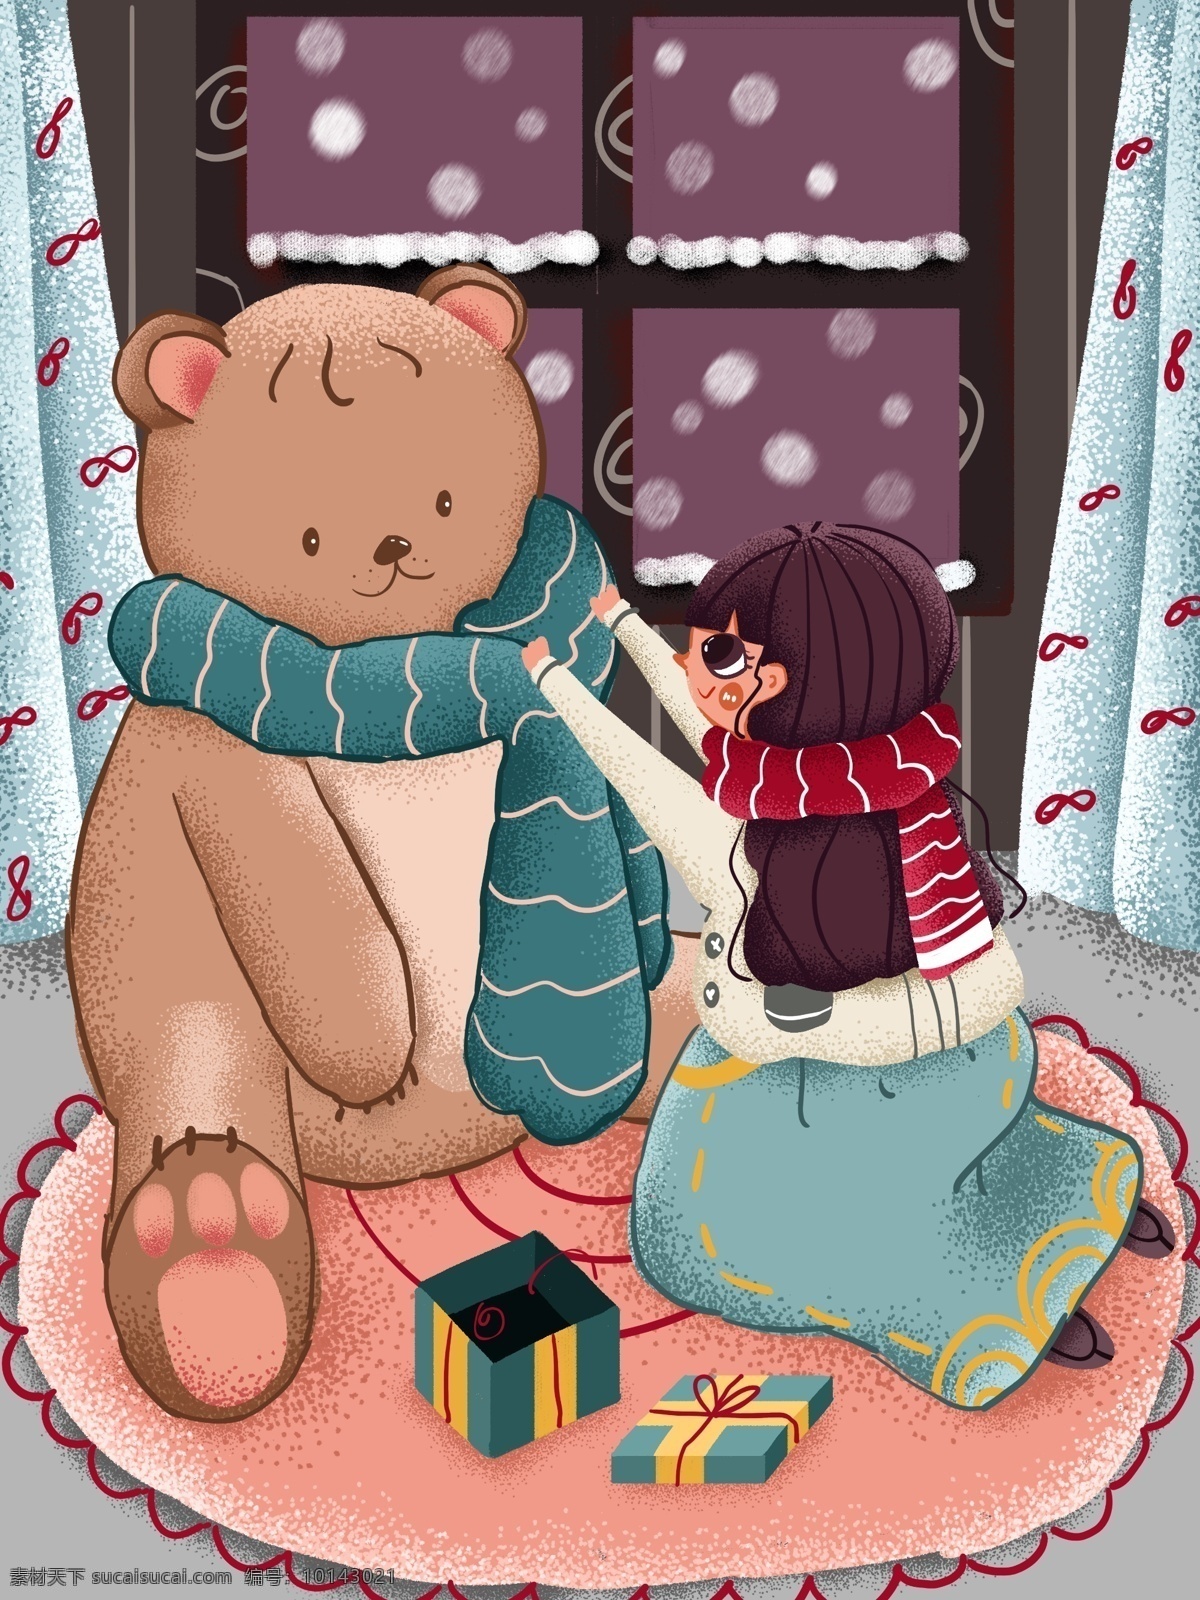 冬天 你好 女孩 下雪天 玩具 熊 围 围巾 室内 蓝色 紫色 插画 雪 玩具熊 卡通可爱 噪点肌理 手绘